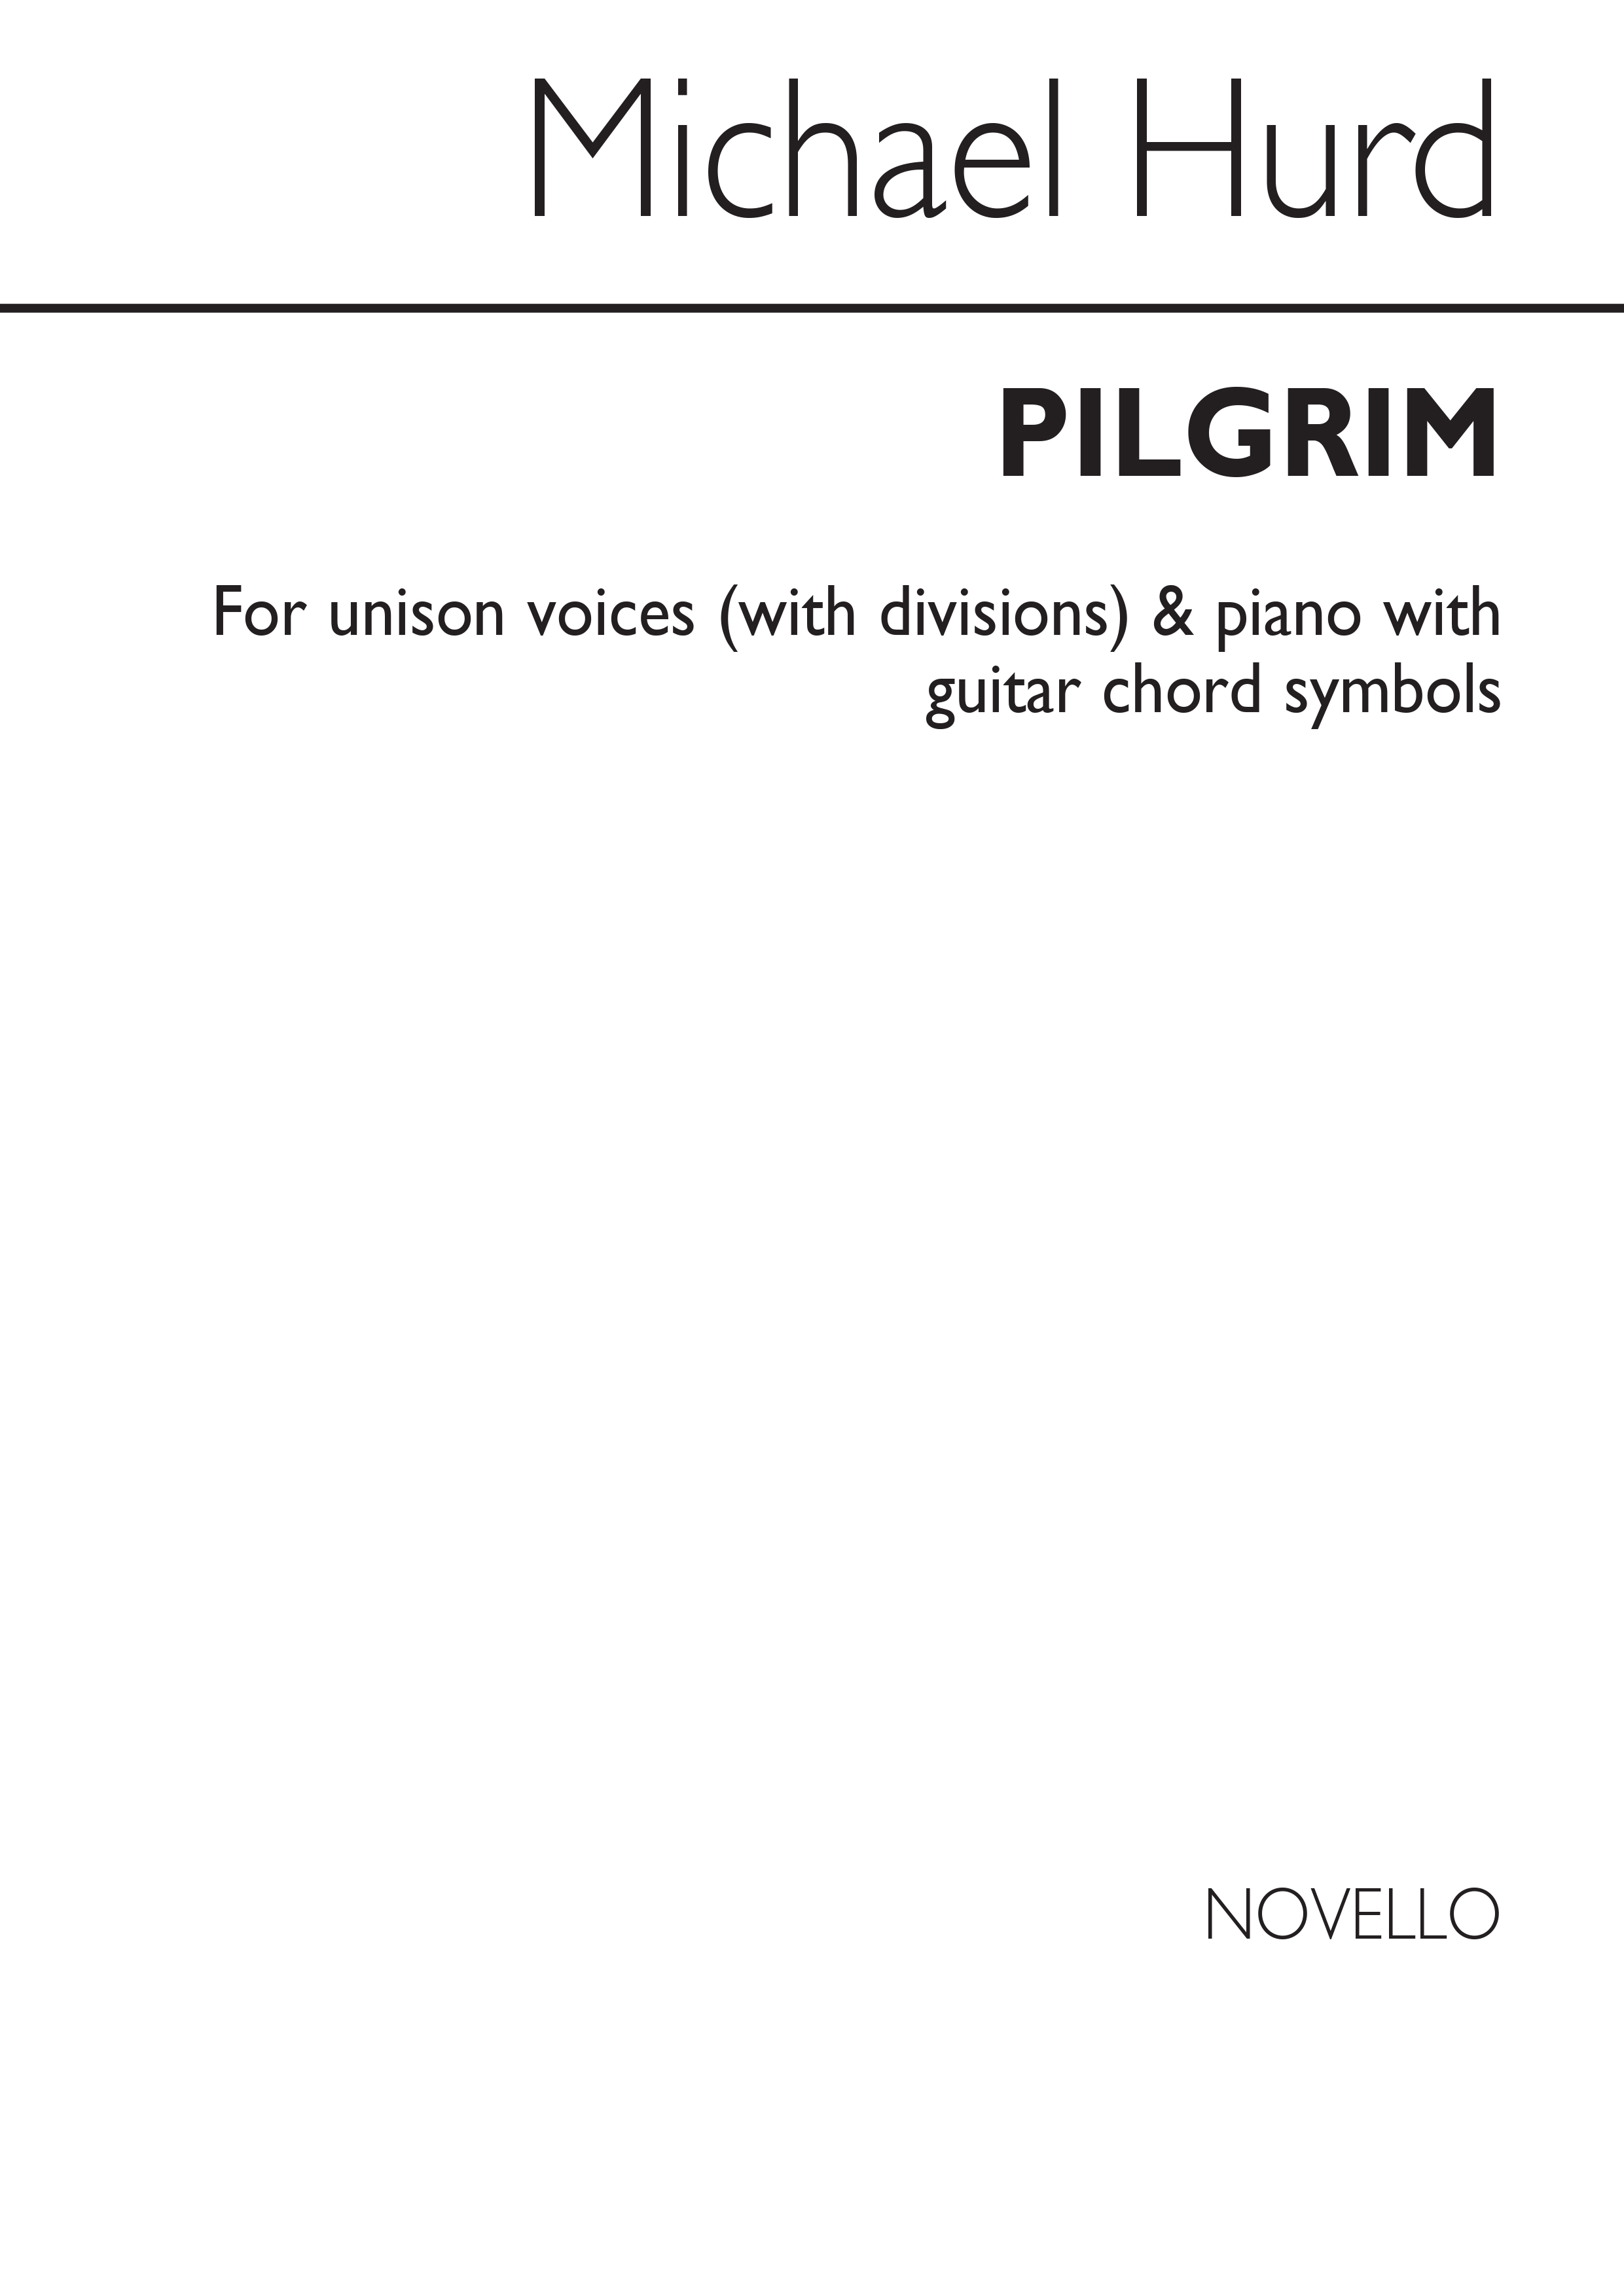 Michael Hurd: Pilgrim